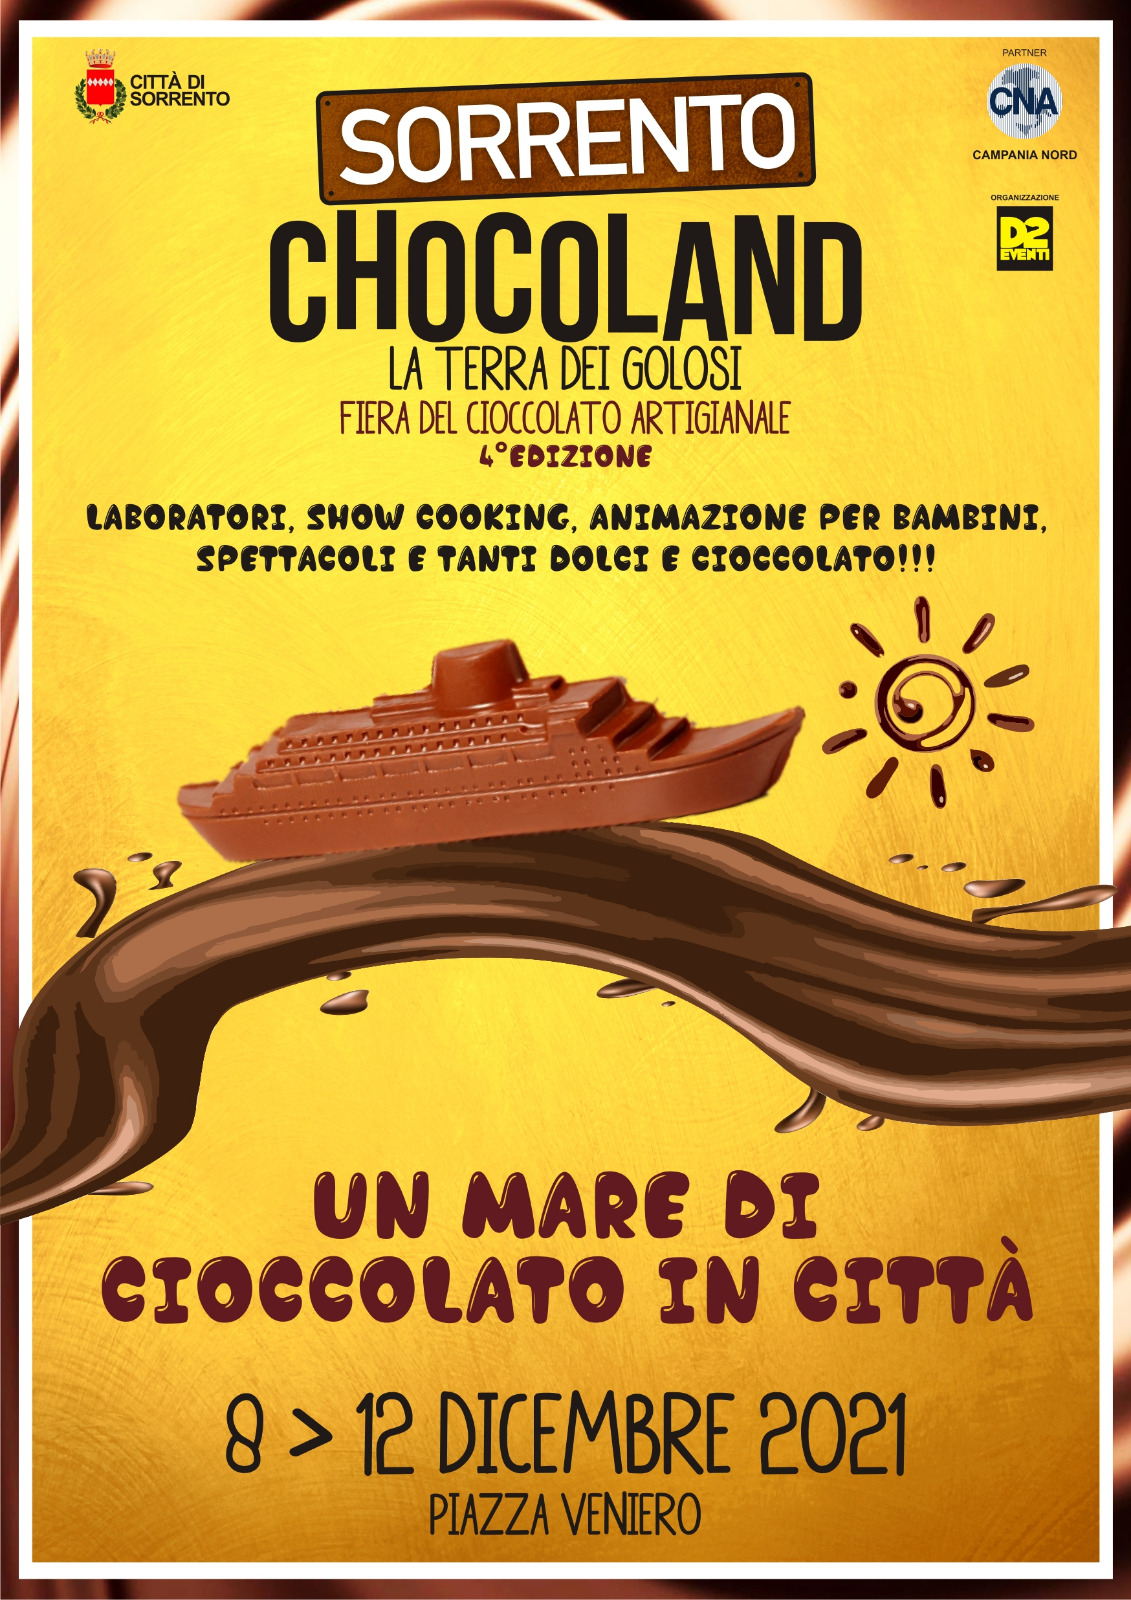 Chocoland Sorrento 8-12 Dicembre 2021